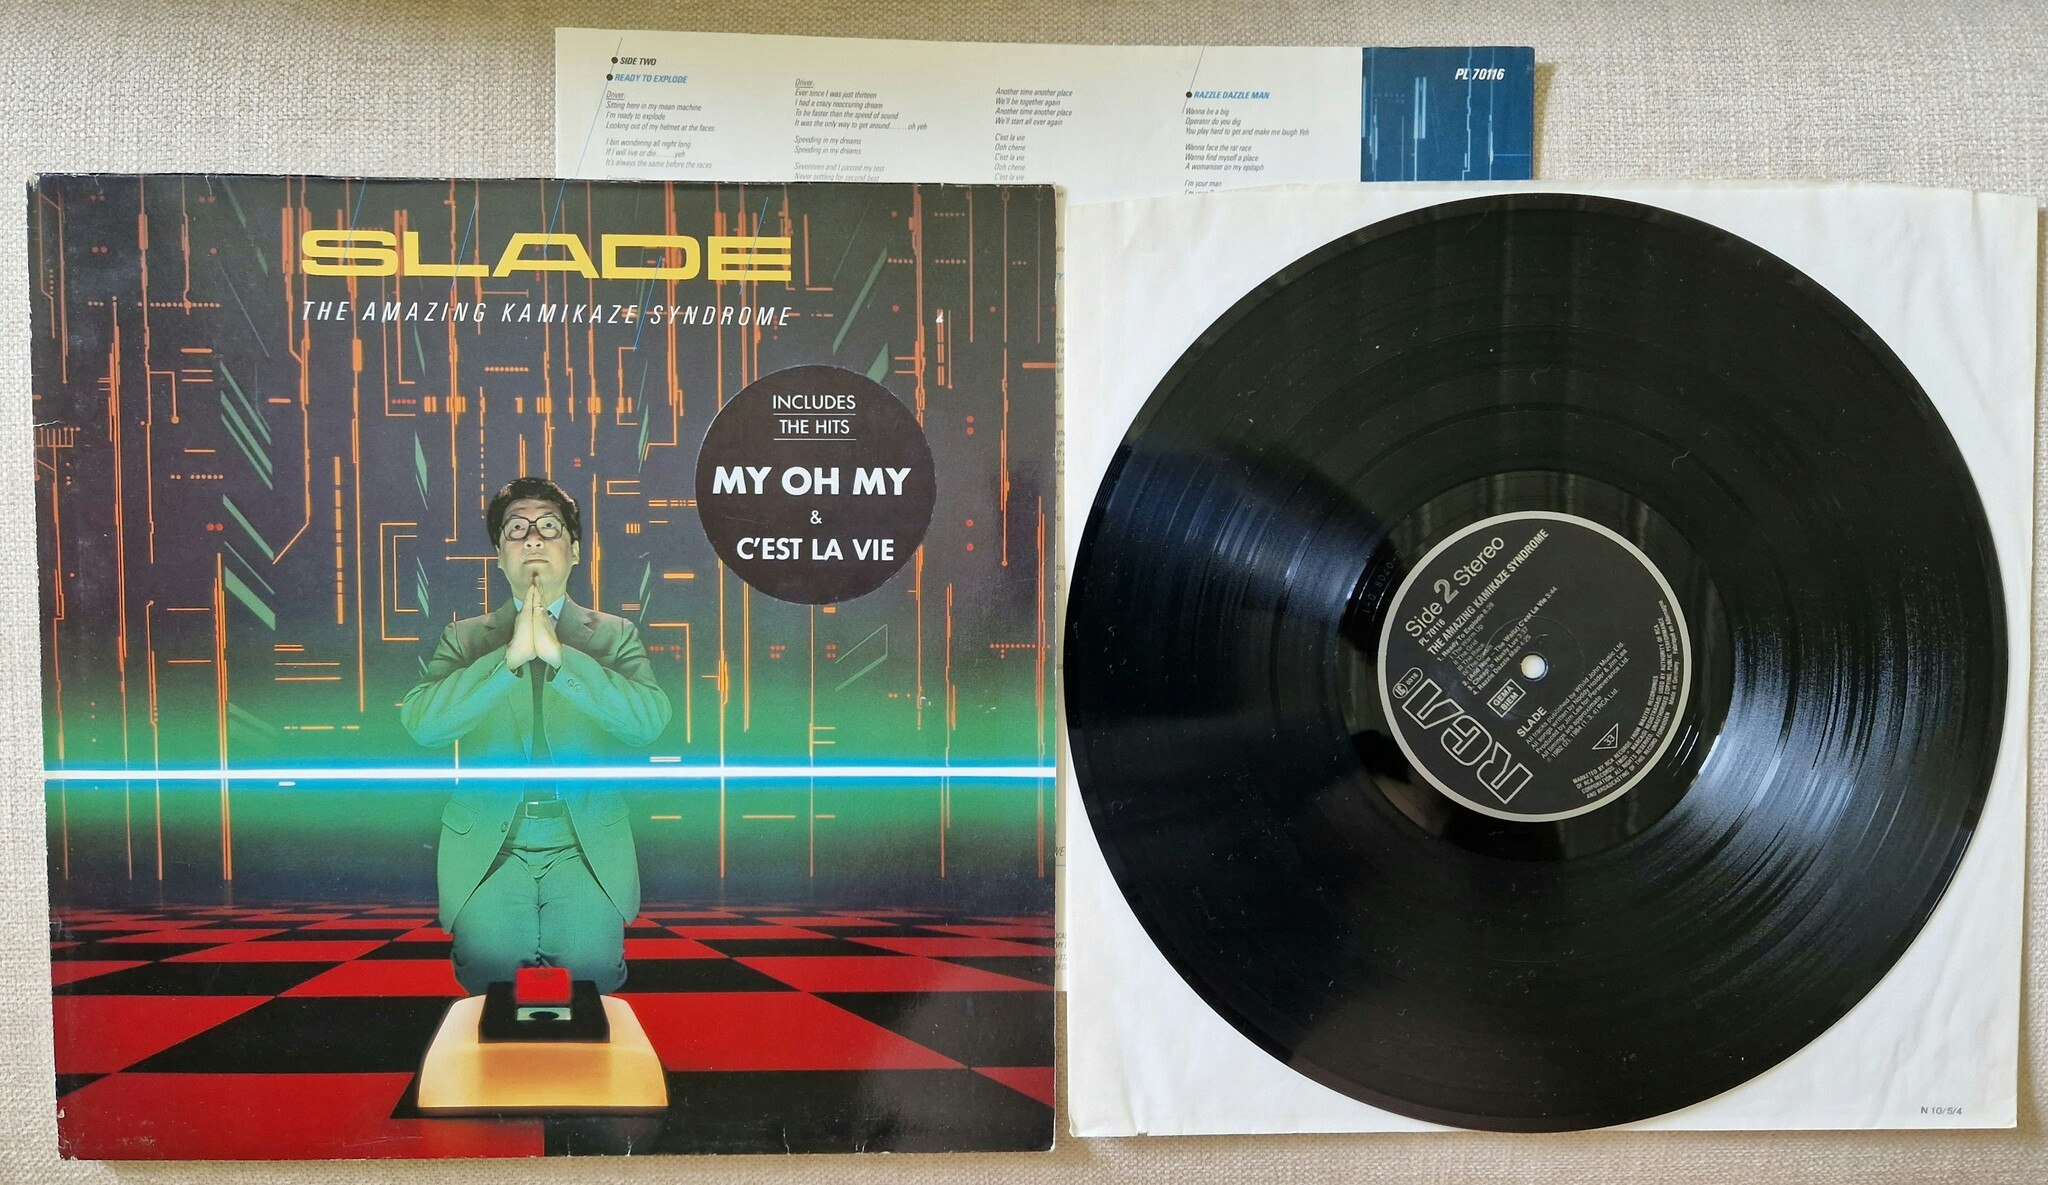 Kopia Slade, The amazing kamikaze syndrome. Vinyl LP